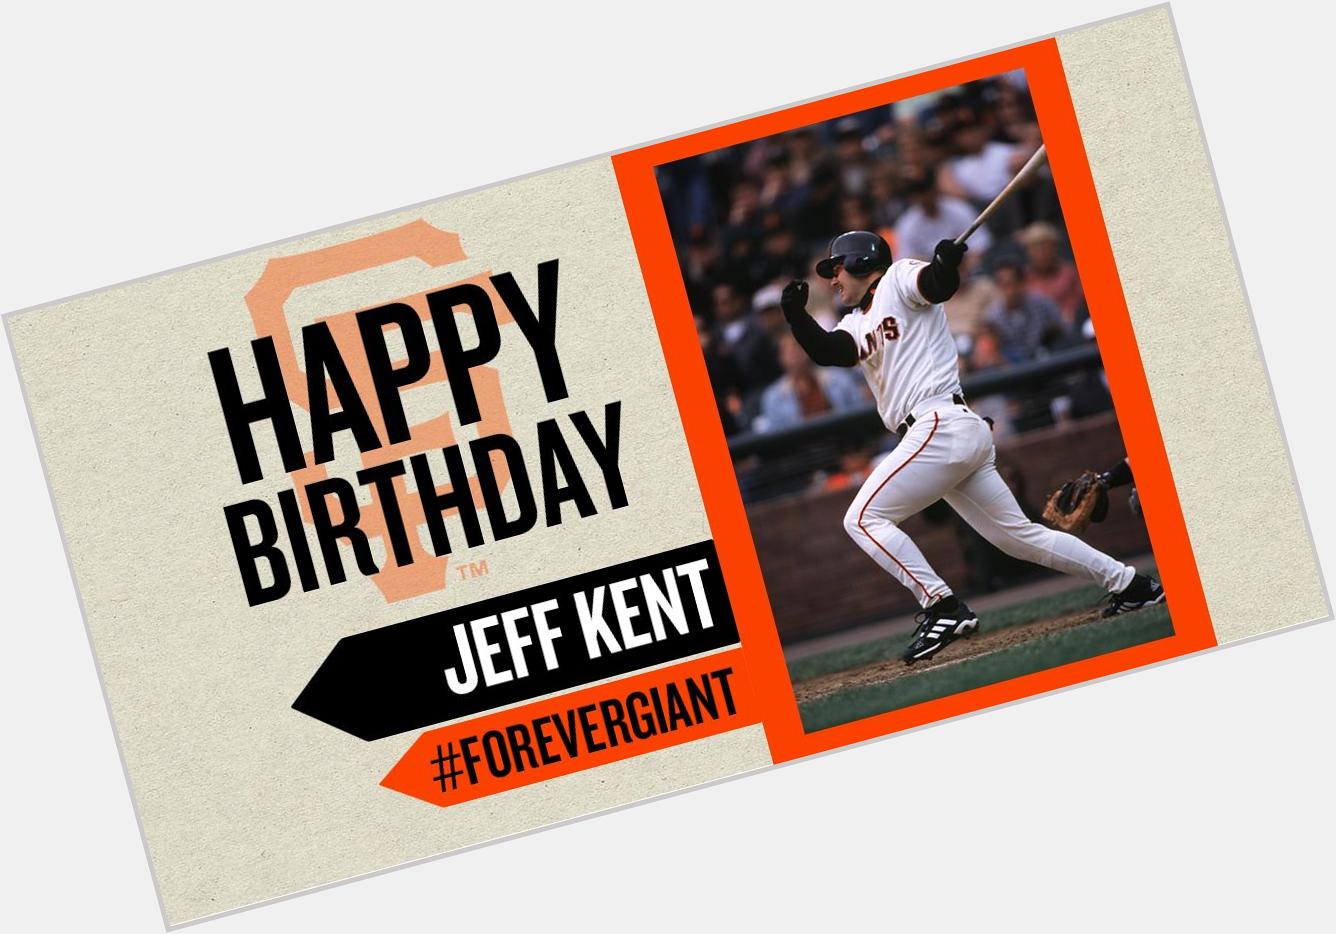 Happy Birthday to Jeff Kent!  